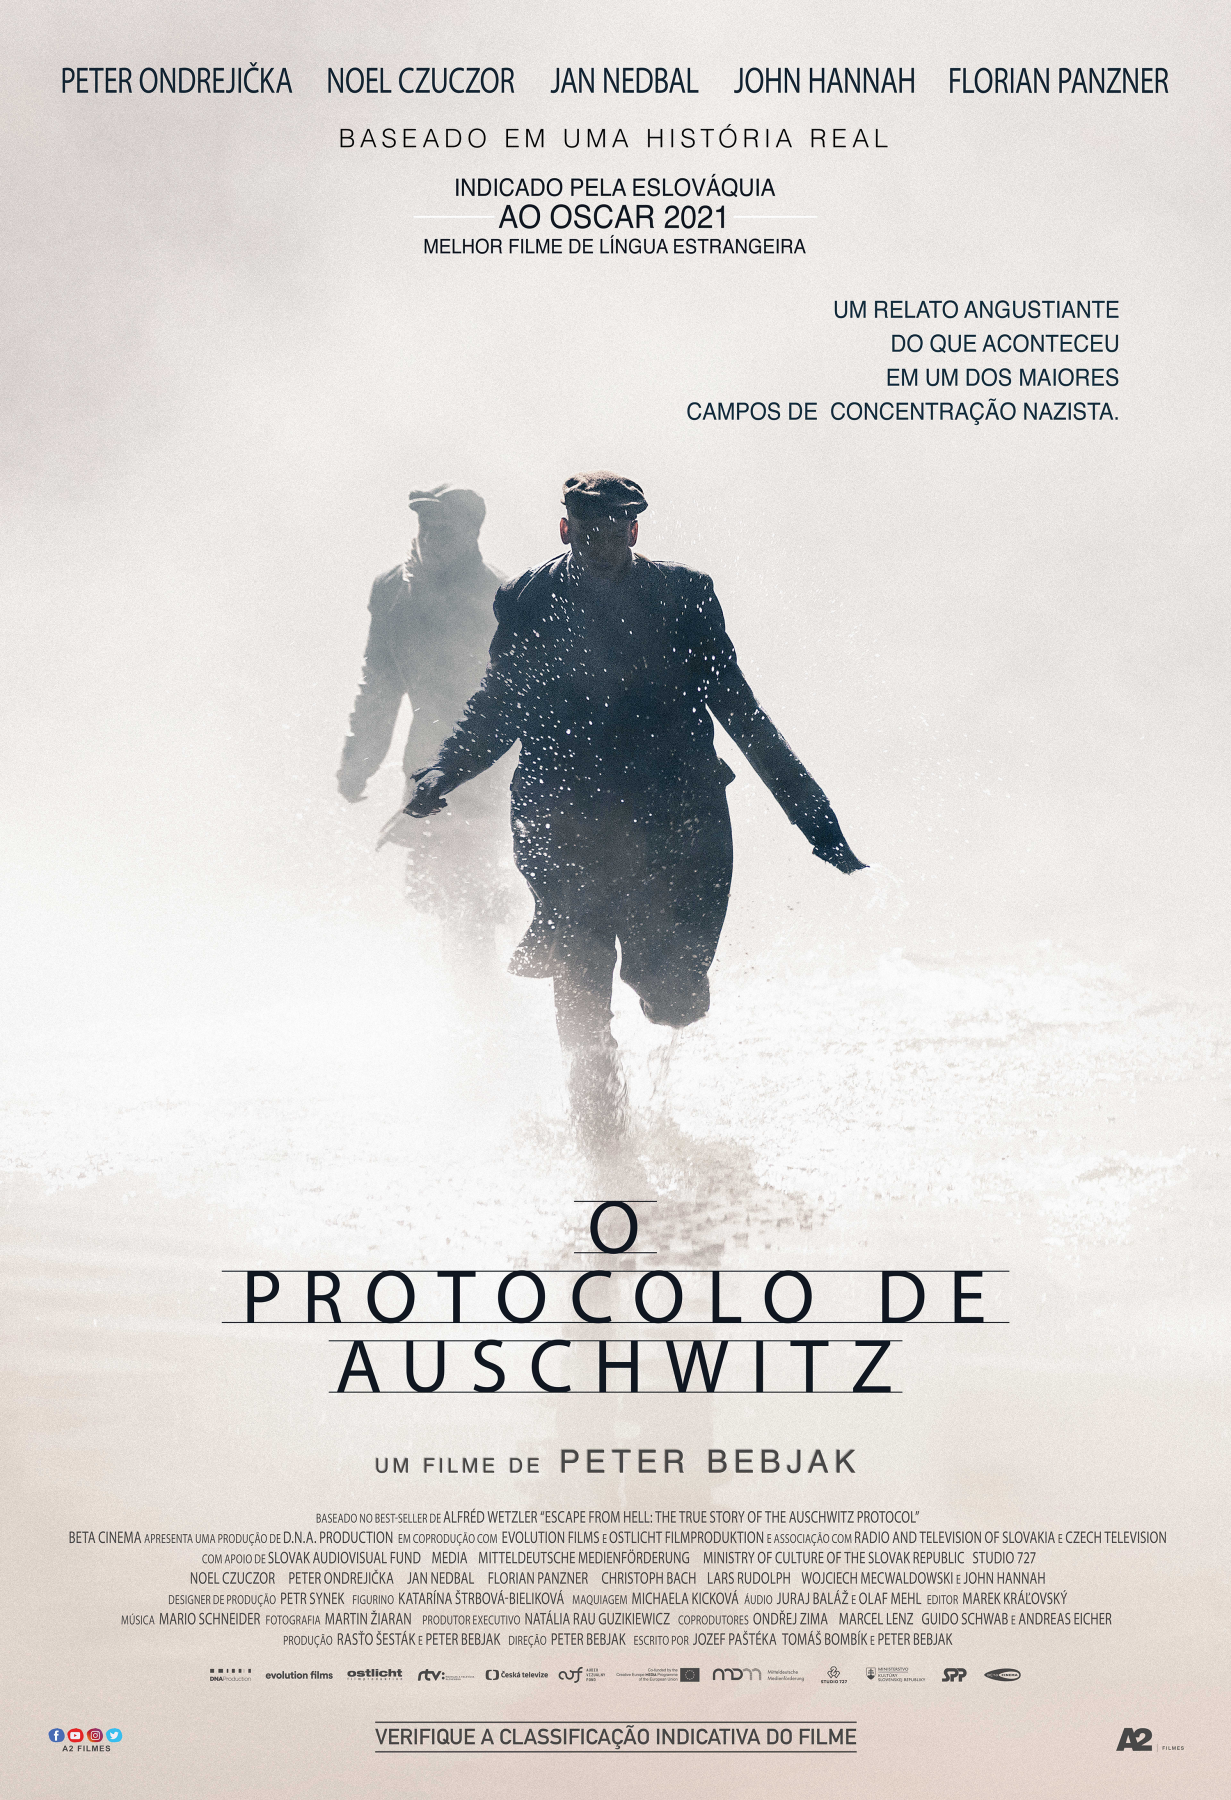 Com exclusividade para o Acesso Cultural, a A2 Filmes divulga o cartaz nacional em primeira mão do filme "O Protocolo de Auschwitz". Veja!